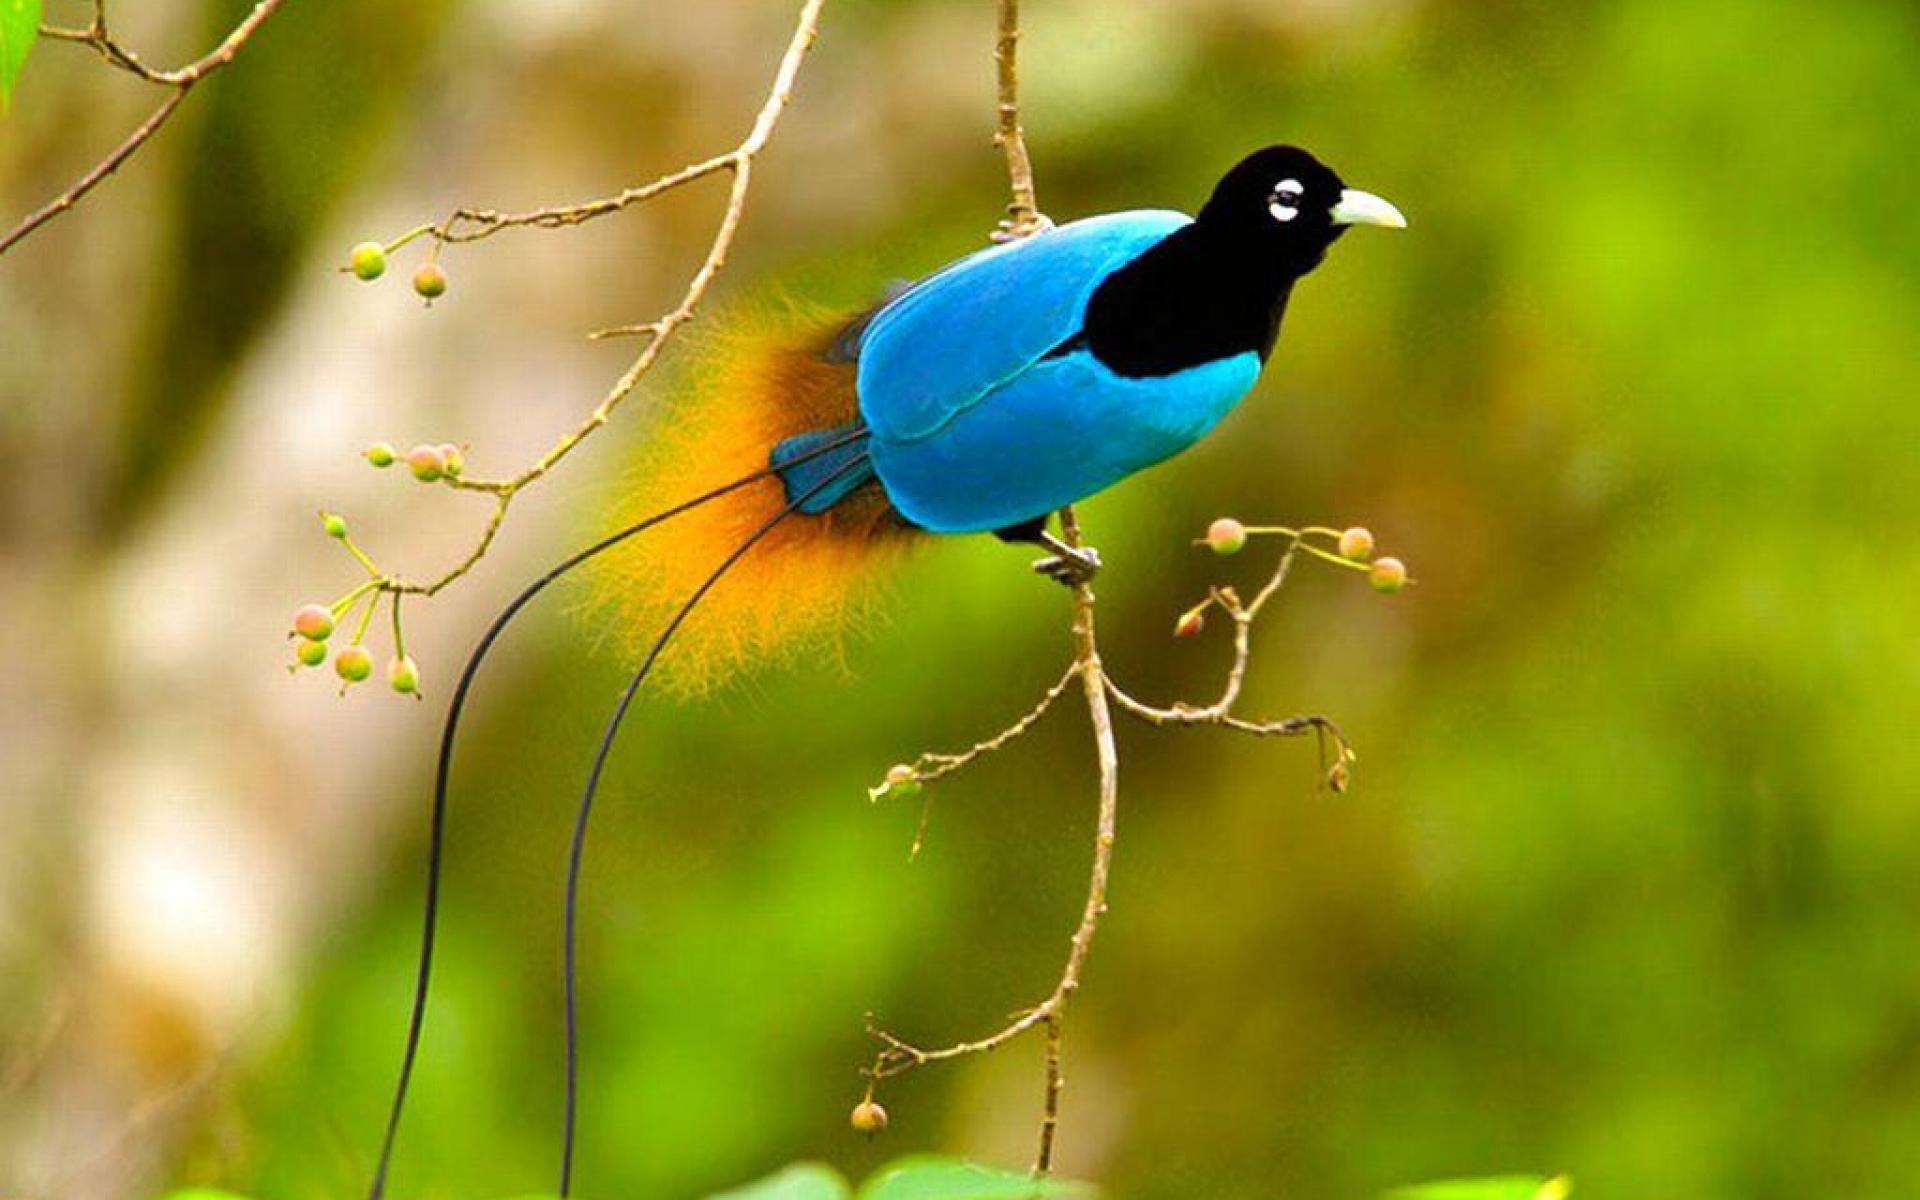 Flying Bird Wallpaper - Bird Of Paradise Endangered - HD Wallpaper 